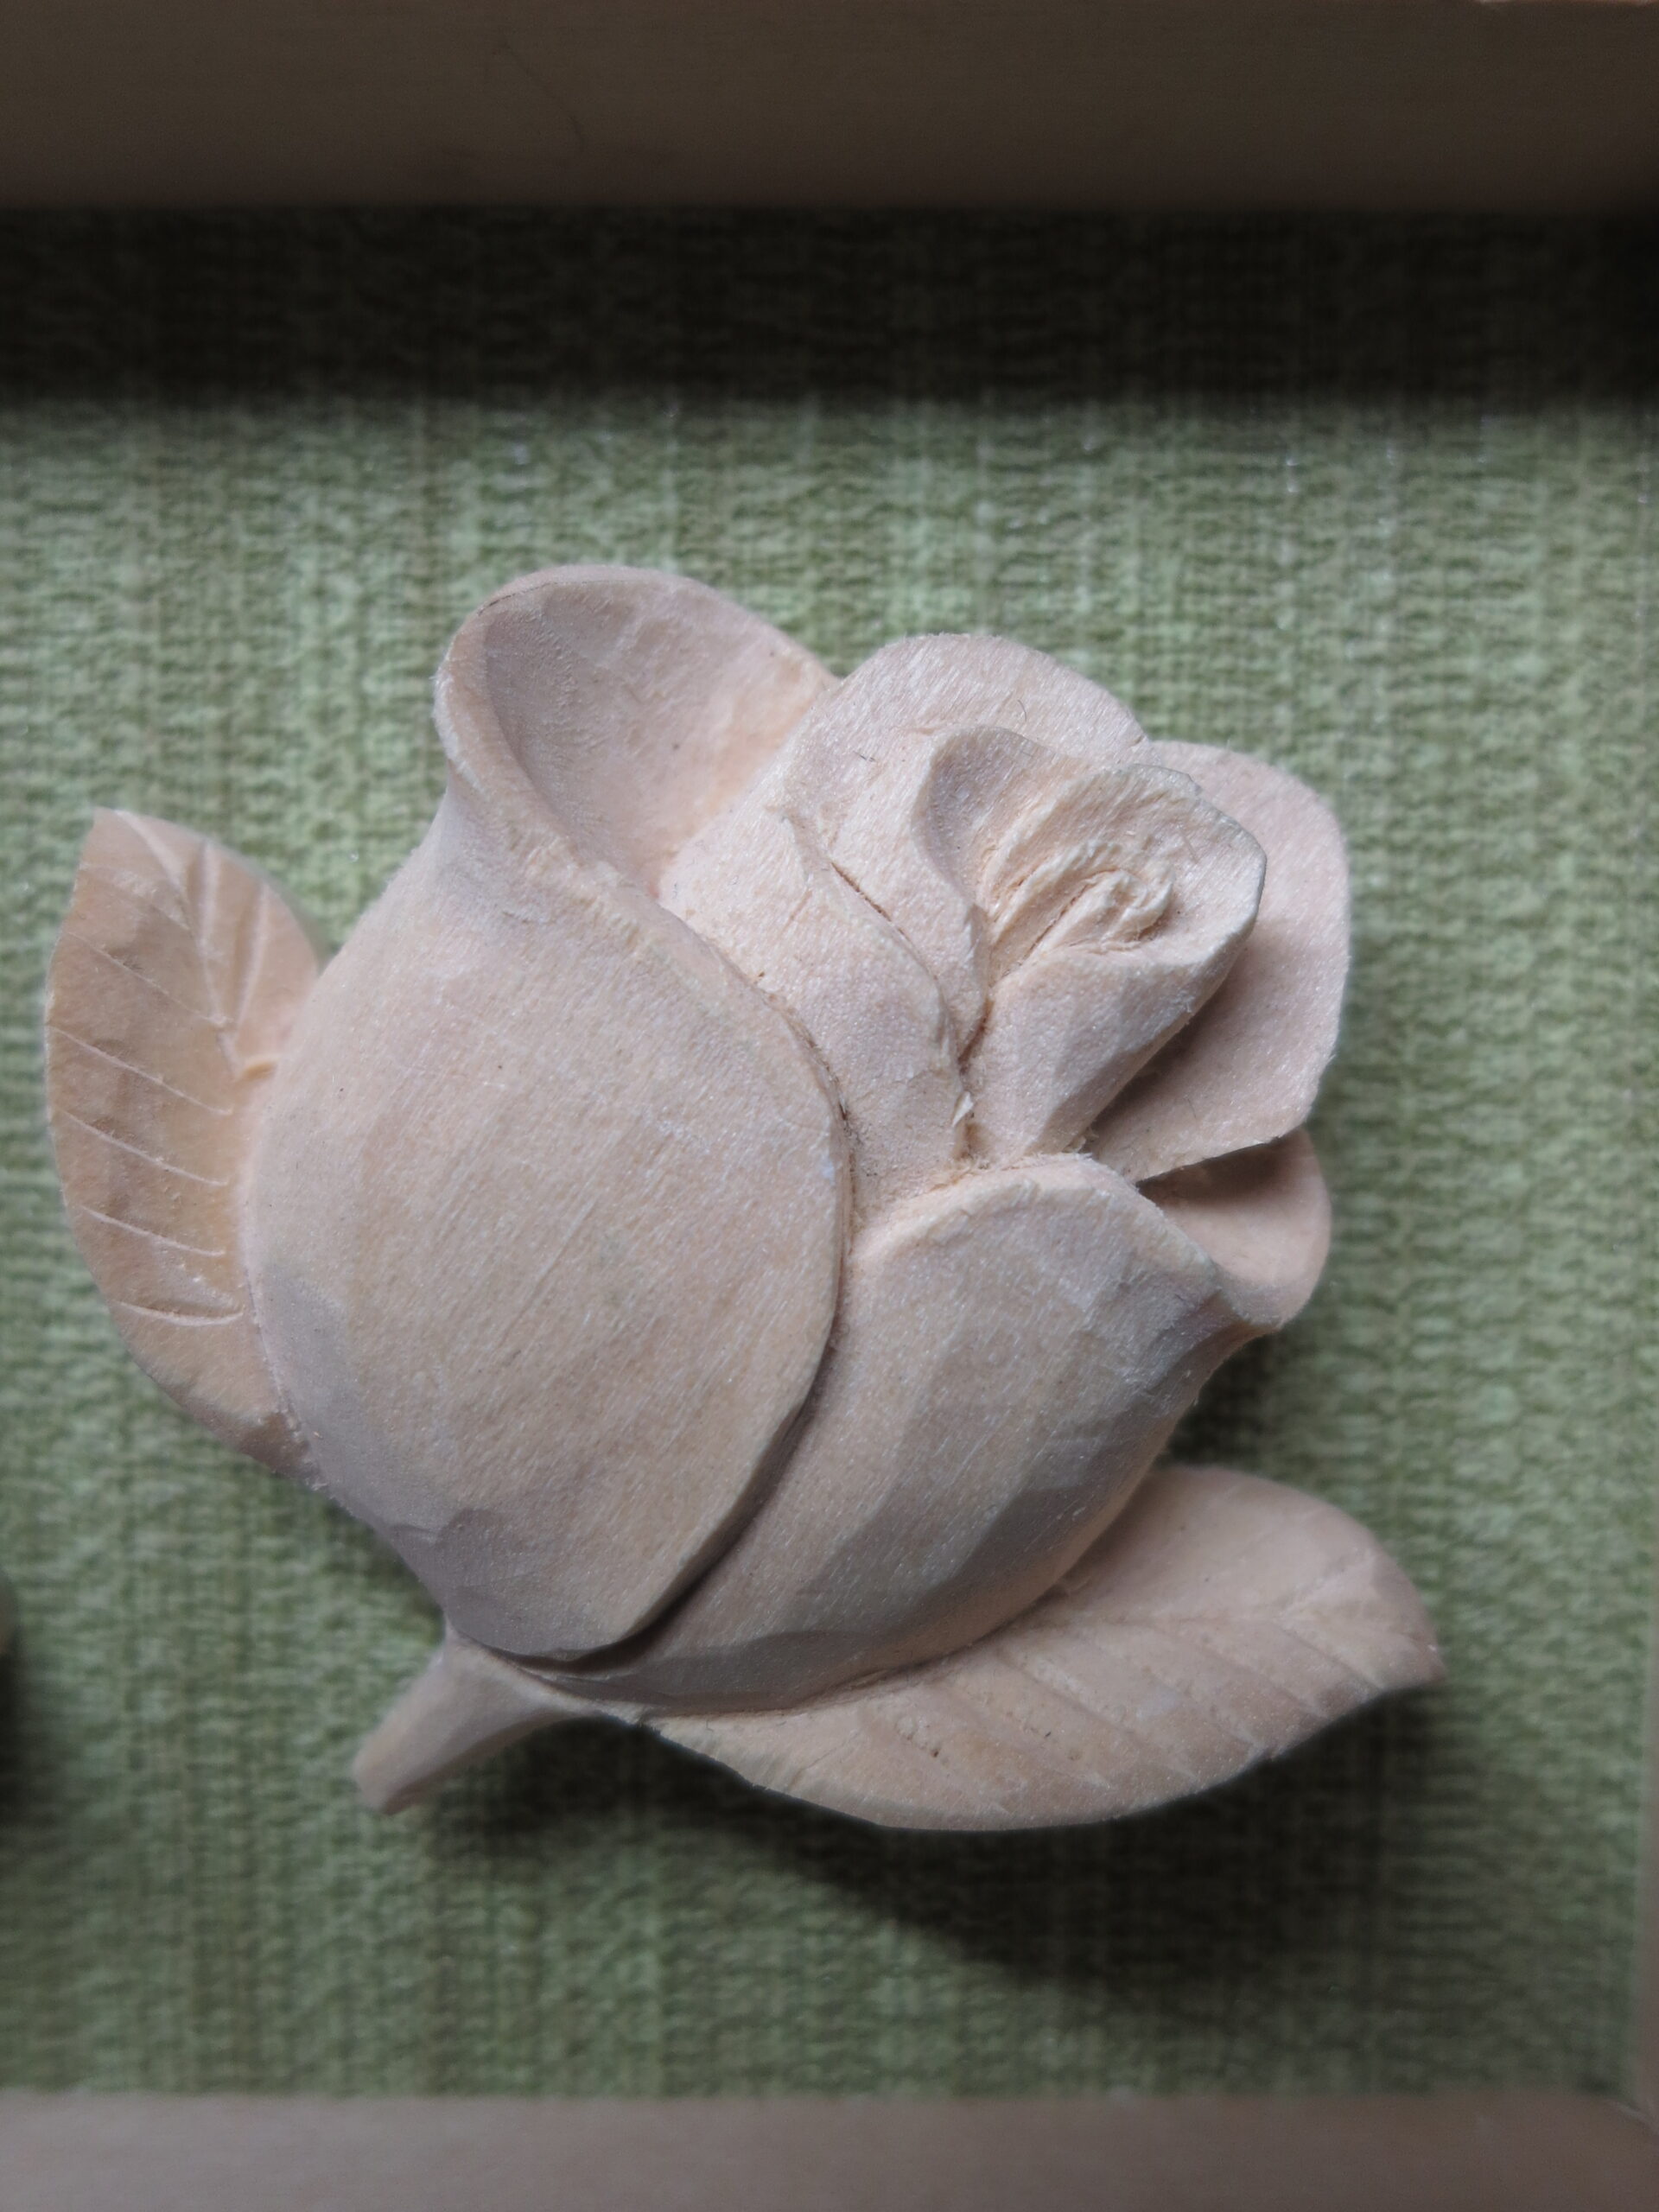 バラの彫刻・木彫・根付・レリーフの下絵と彫り方見本 | 仏像彫刻 彩宏